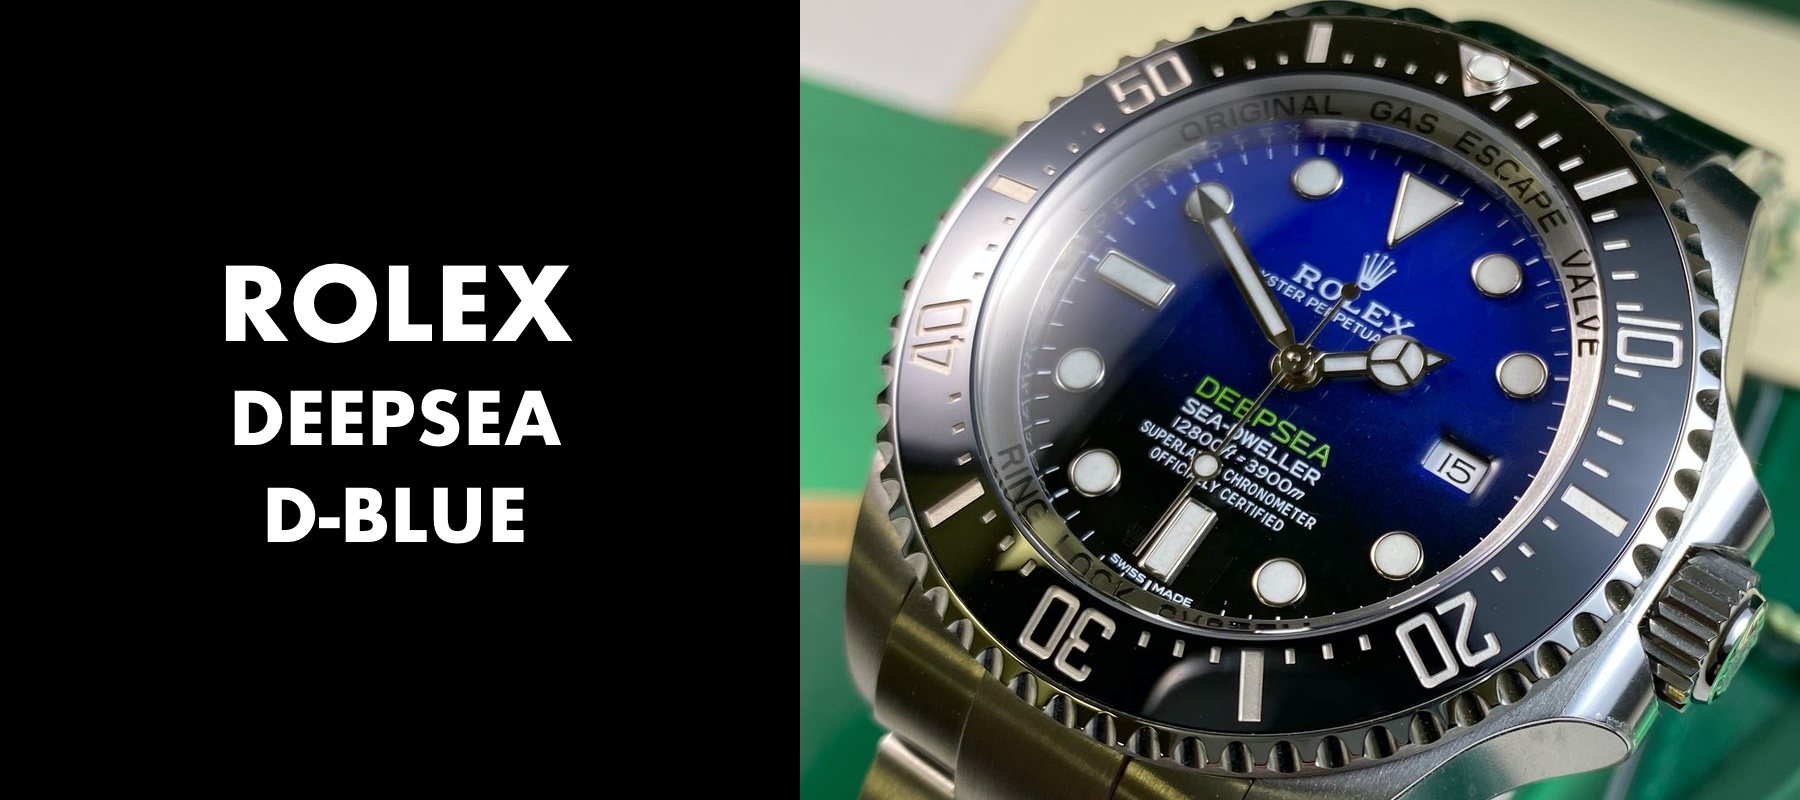 Rolex Deepsea D-Blue 116660 - History